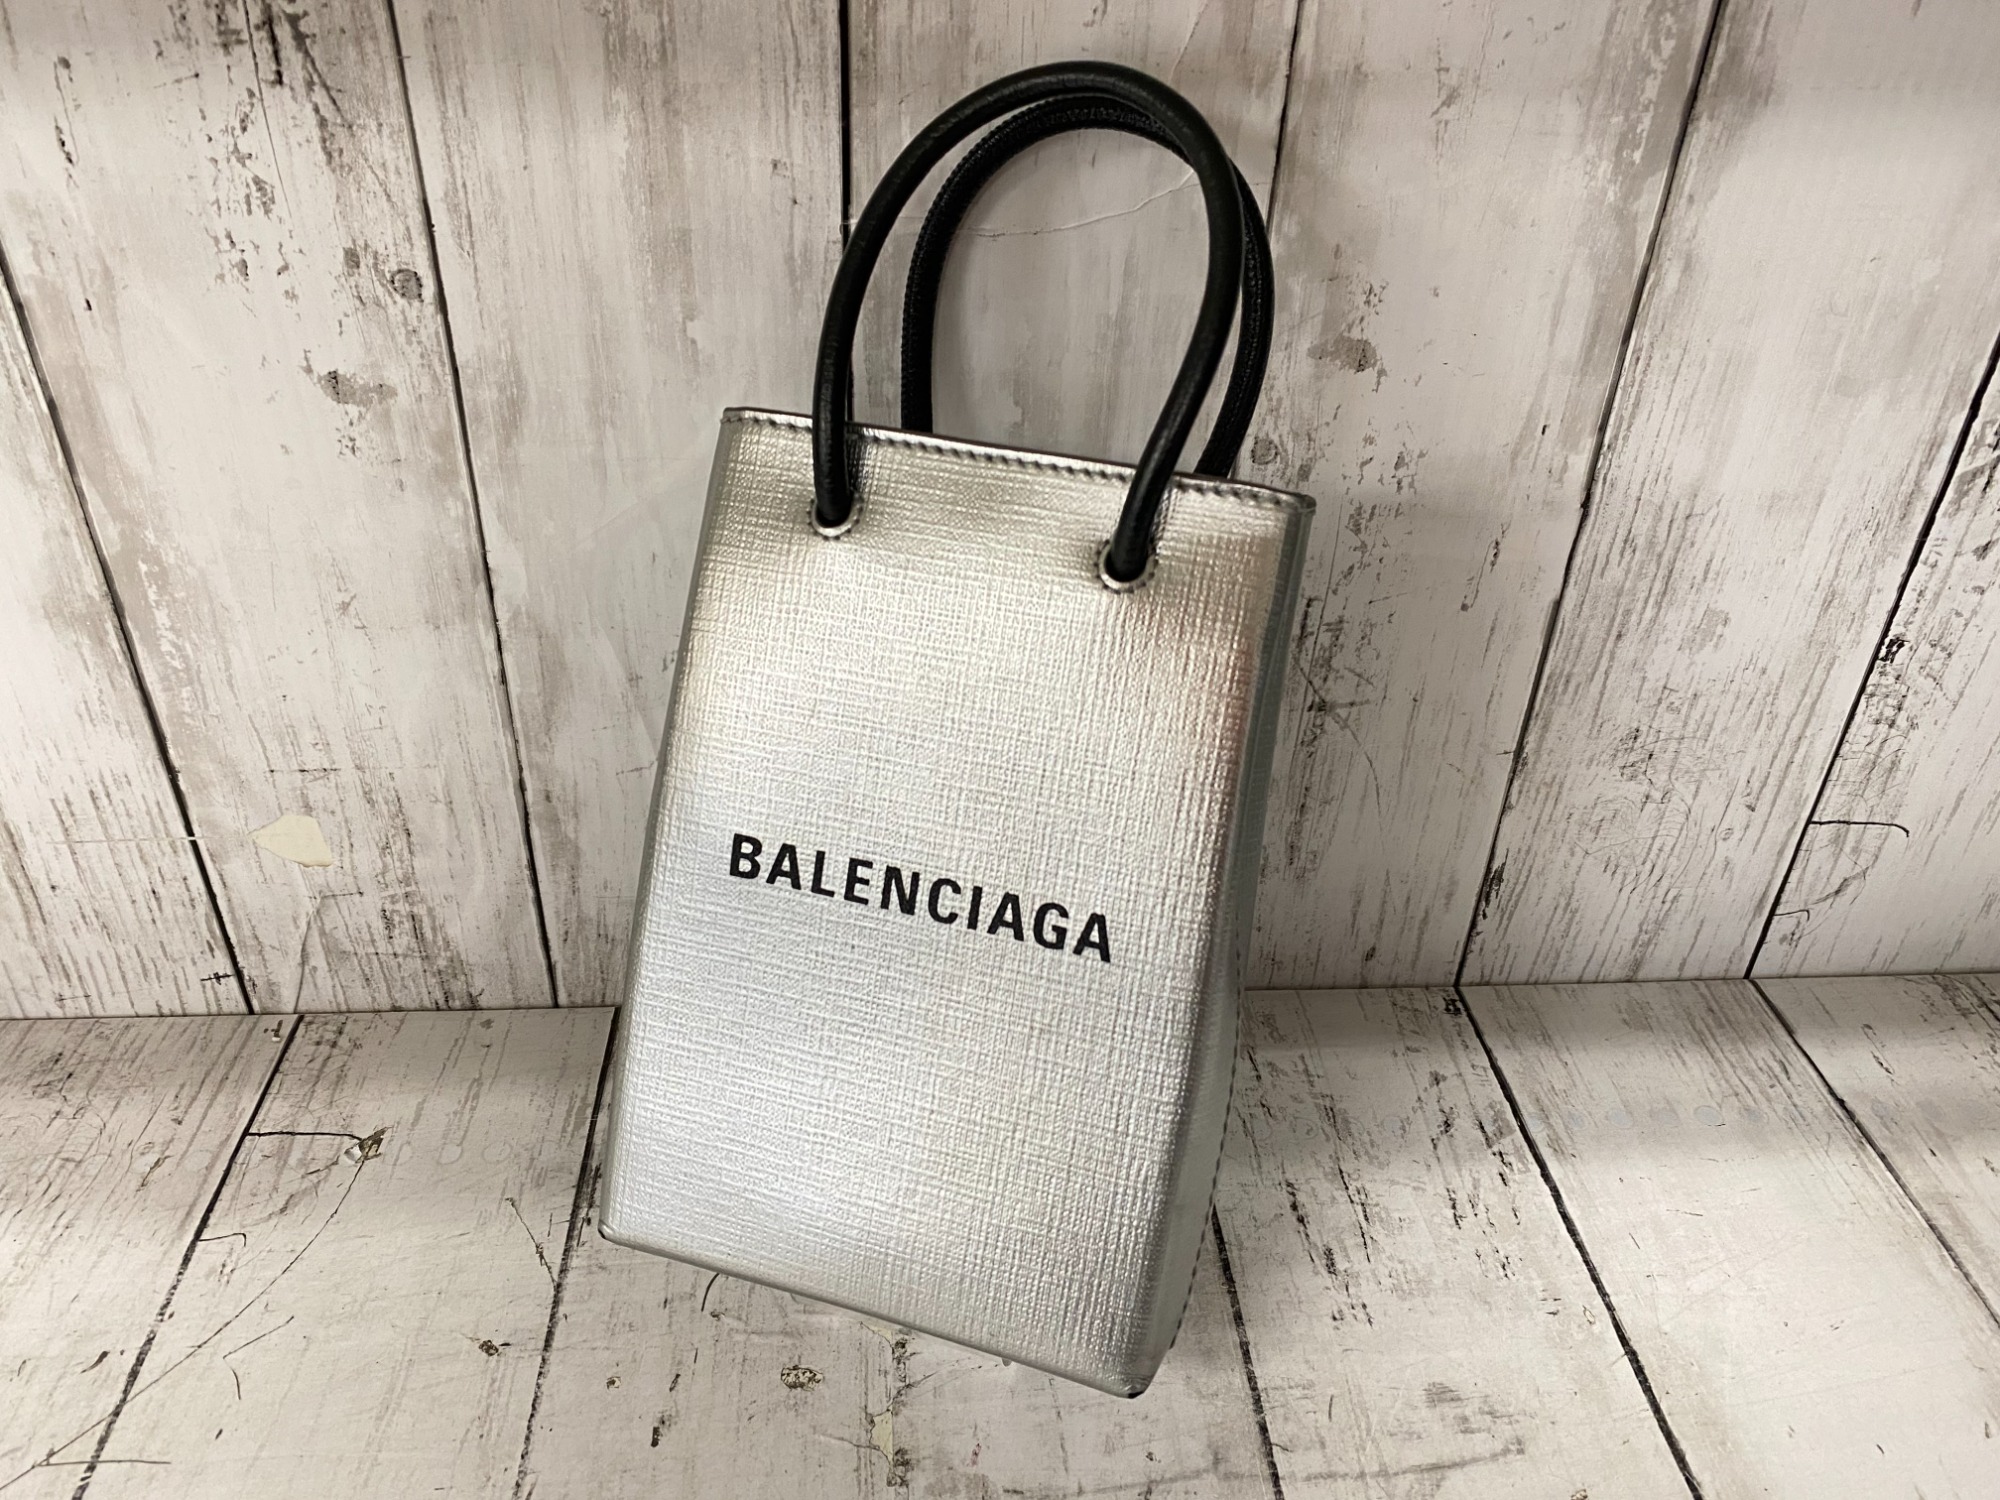 BALENCIAGA(バレンシアガ)ショッピング フォンホルダーバッグのご紹介